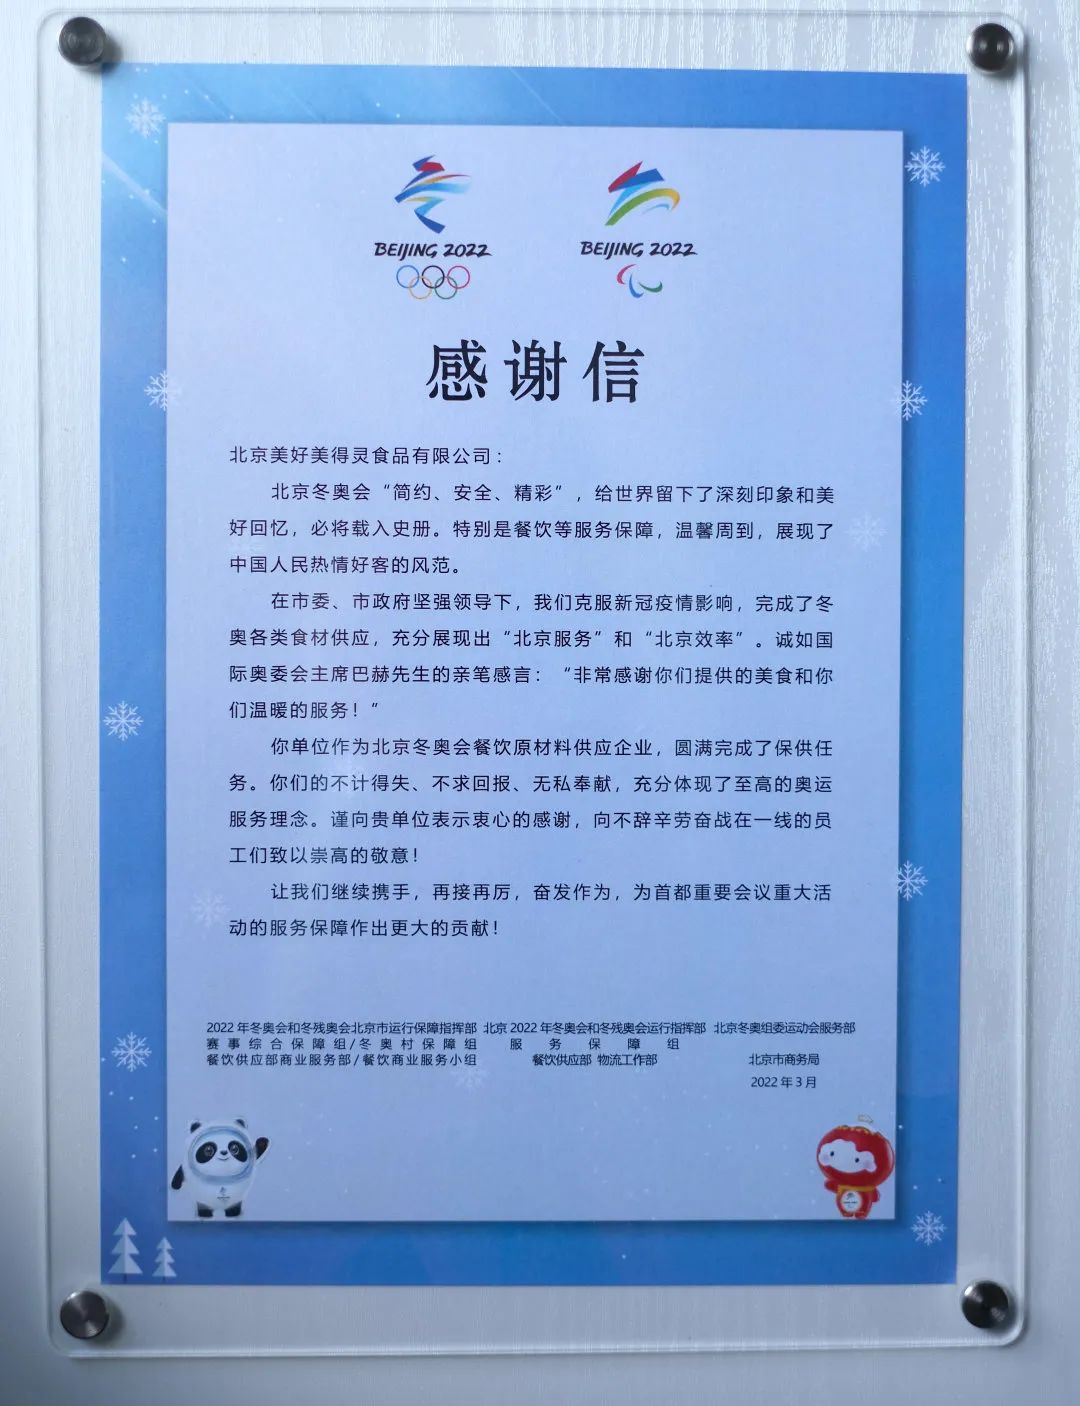 新希望六和旗下公司收到北京冬奥组委感谢信